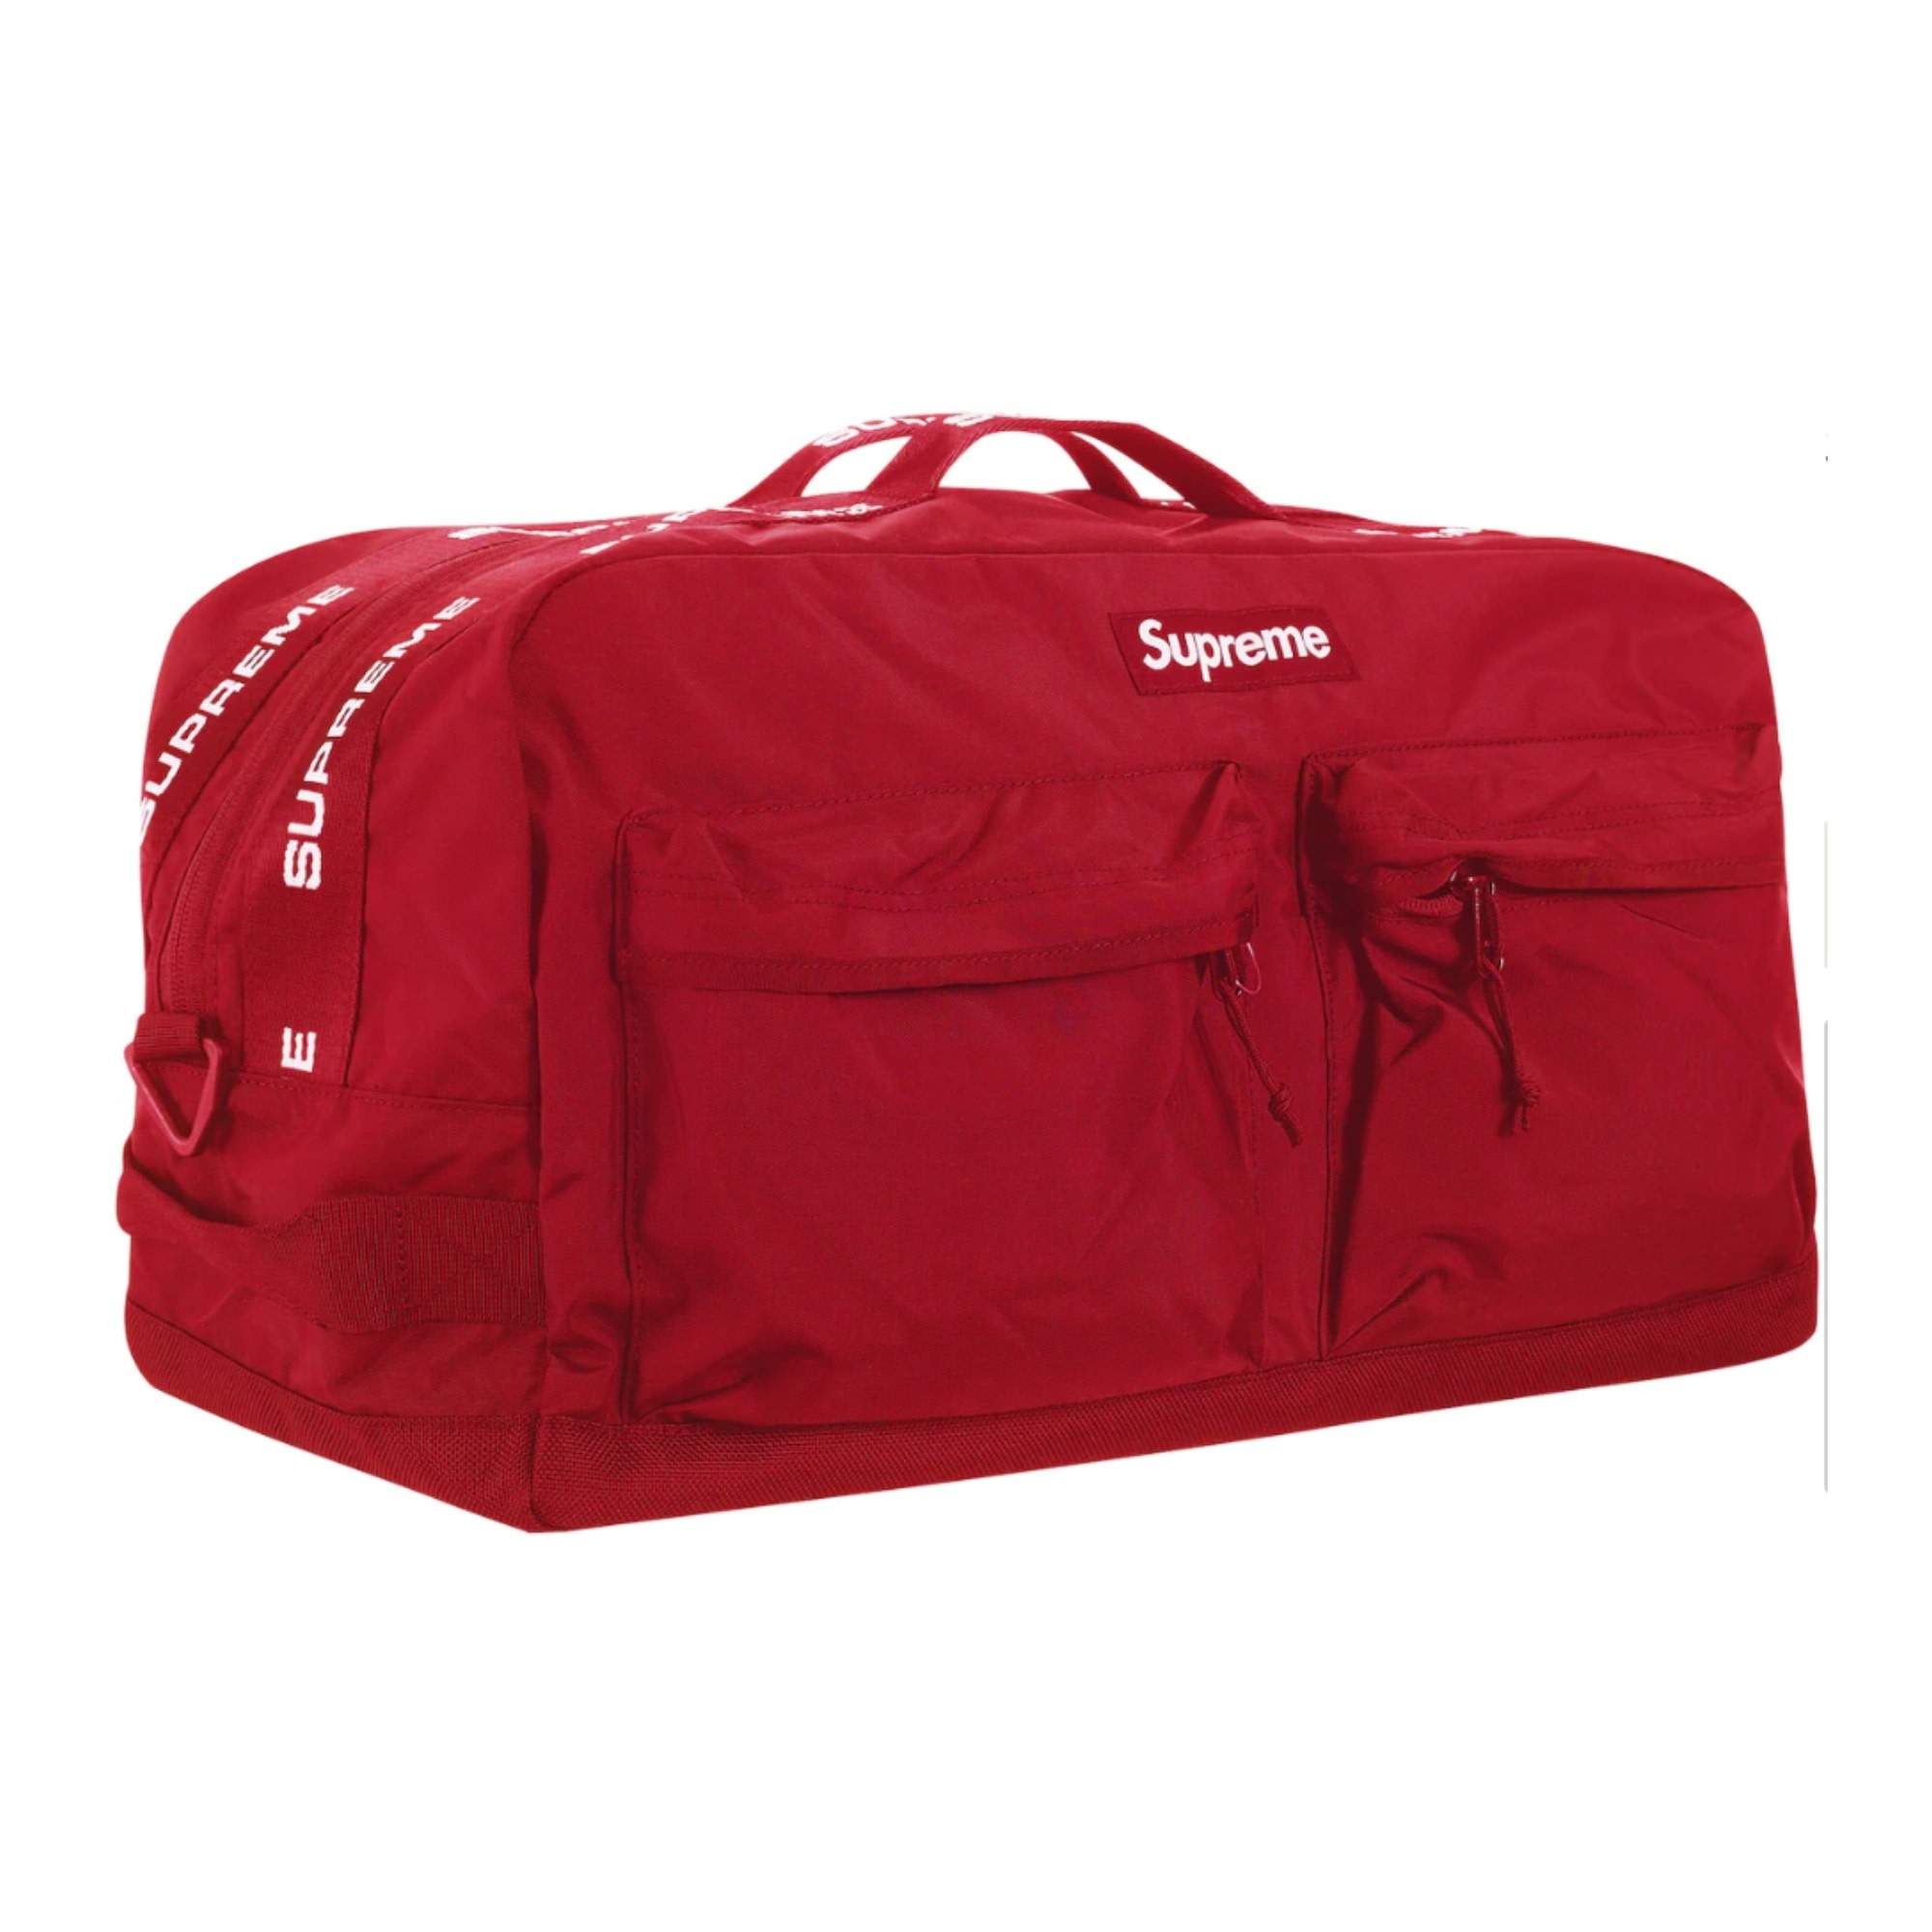 Supreme Duffle Bags for Men